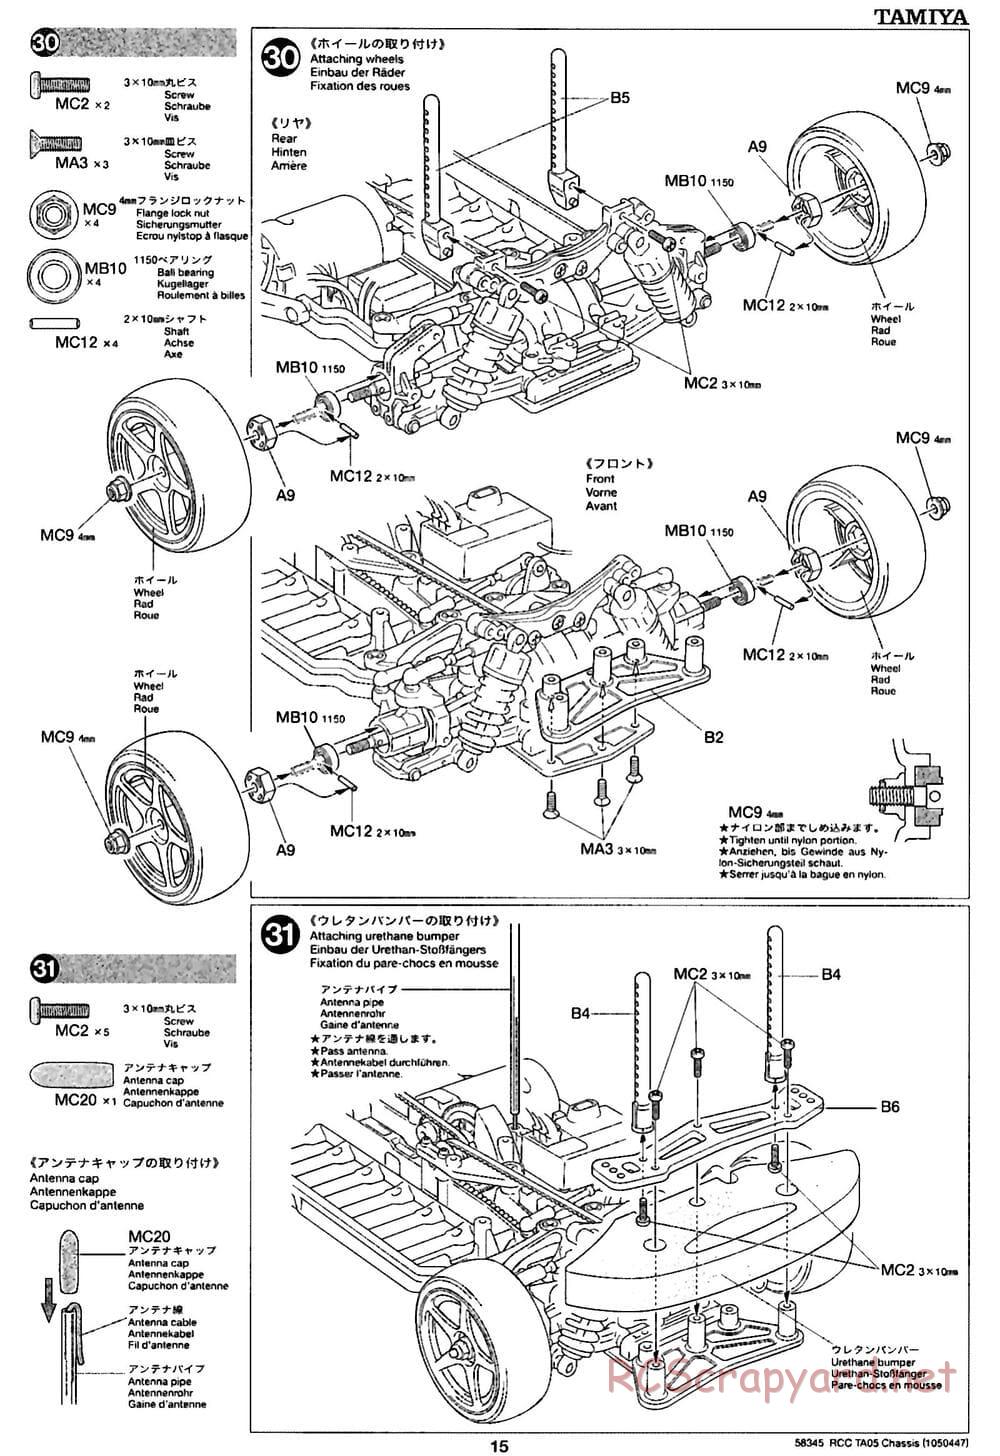 Tamiya - TA05 Chassis - Manual - Page 15